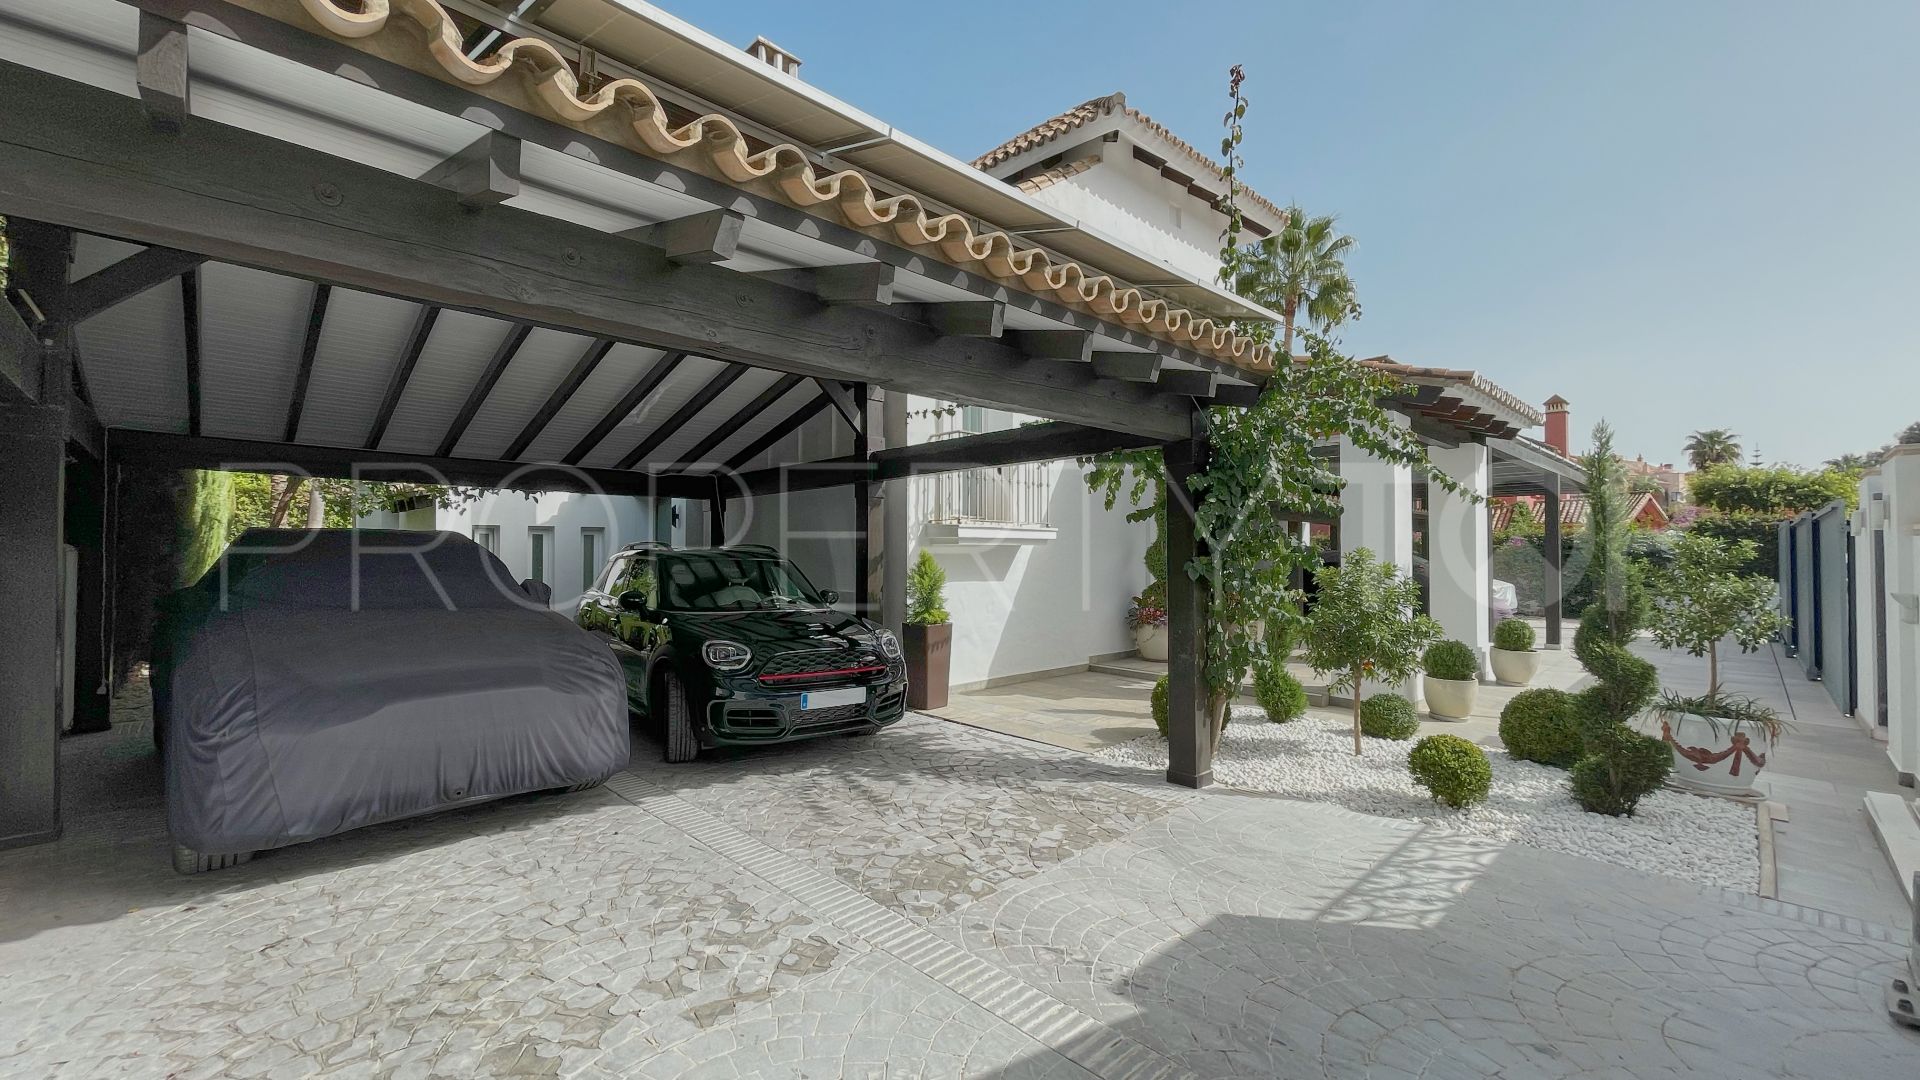 4 bedrooms villa in Las Mimosas for sale